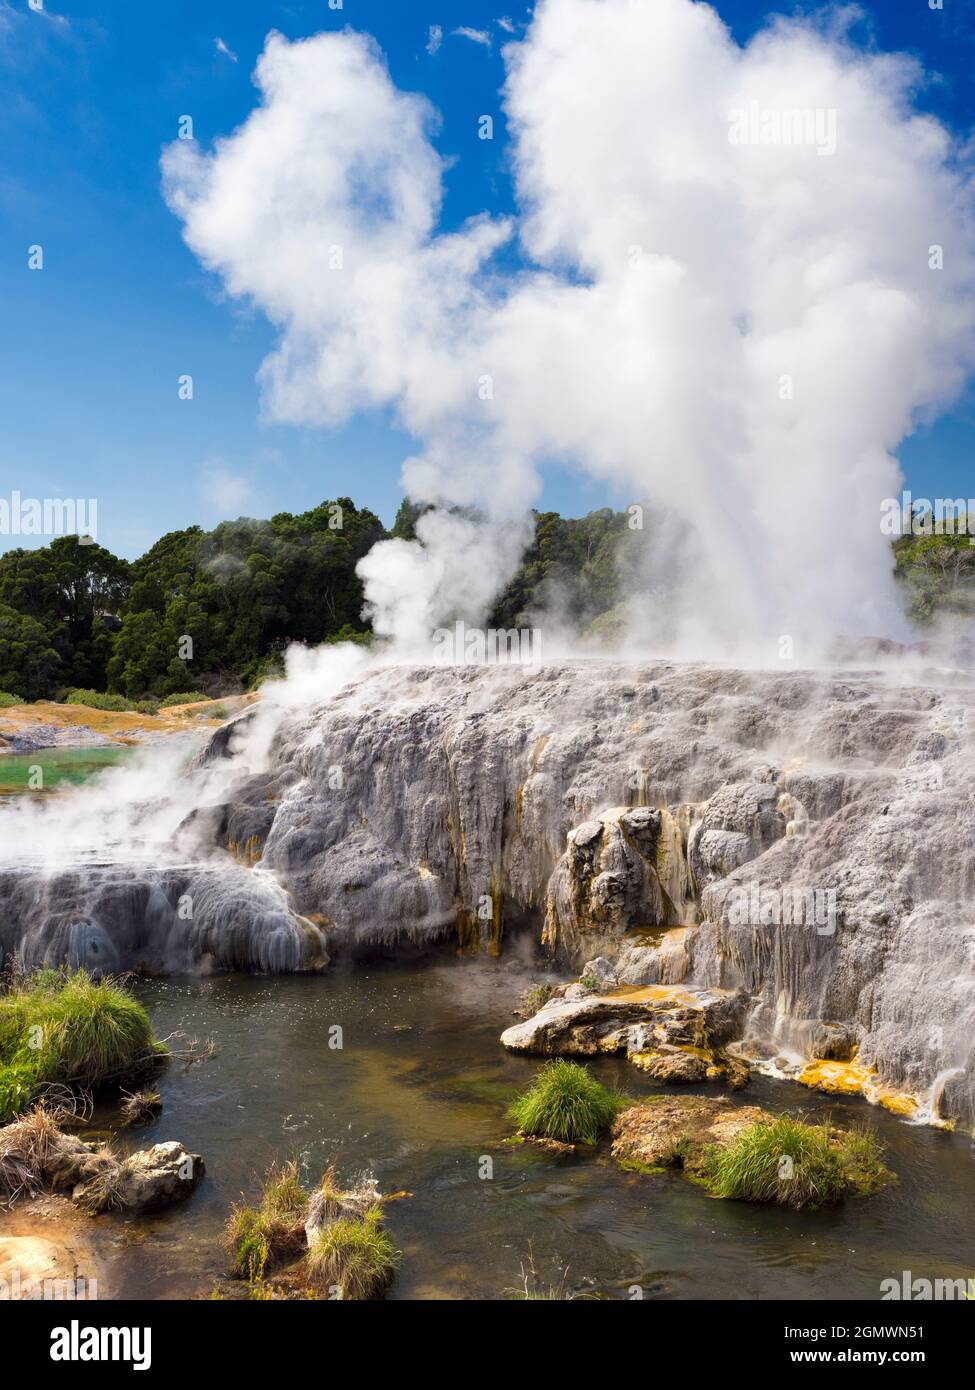 Rotorua, Neuseeland - 1. März 2019; Rotorua auf der neuseeländischen Nordinsel ist ein ausgedehntes Gebiet mit geothermischen Quellen, kochenden Schlammquellen und Su Stockfoto